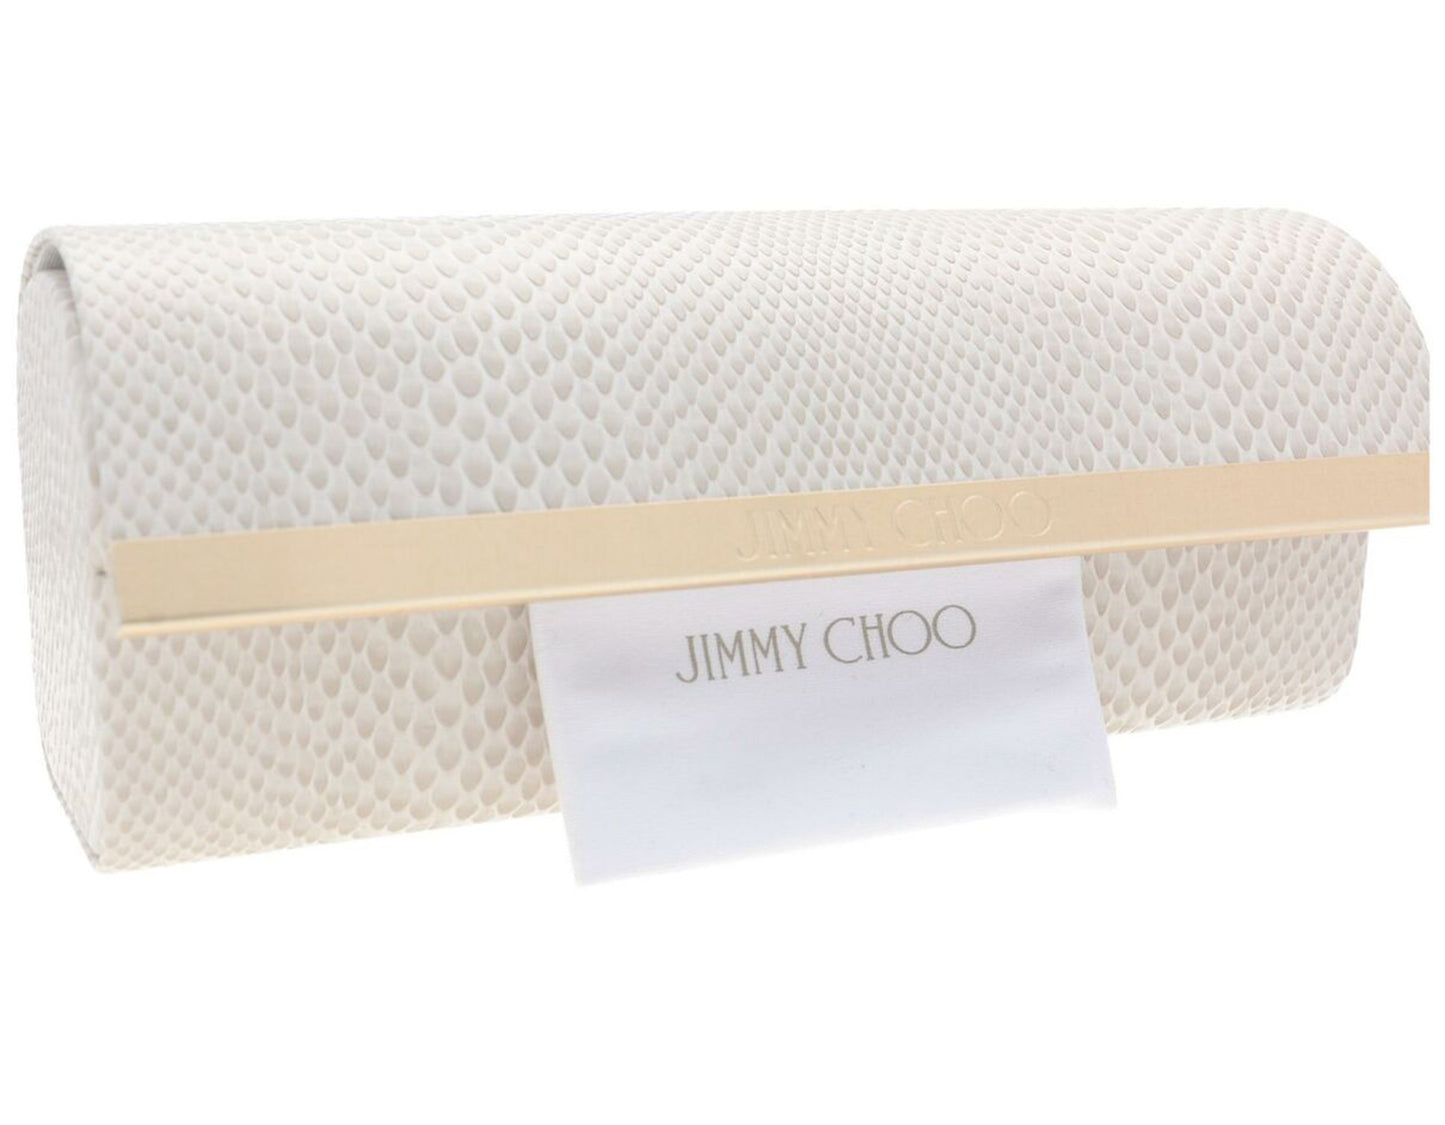 Jimmy Choo NENA/S-0086 HA 51mm New Sunglasses